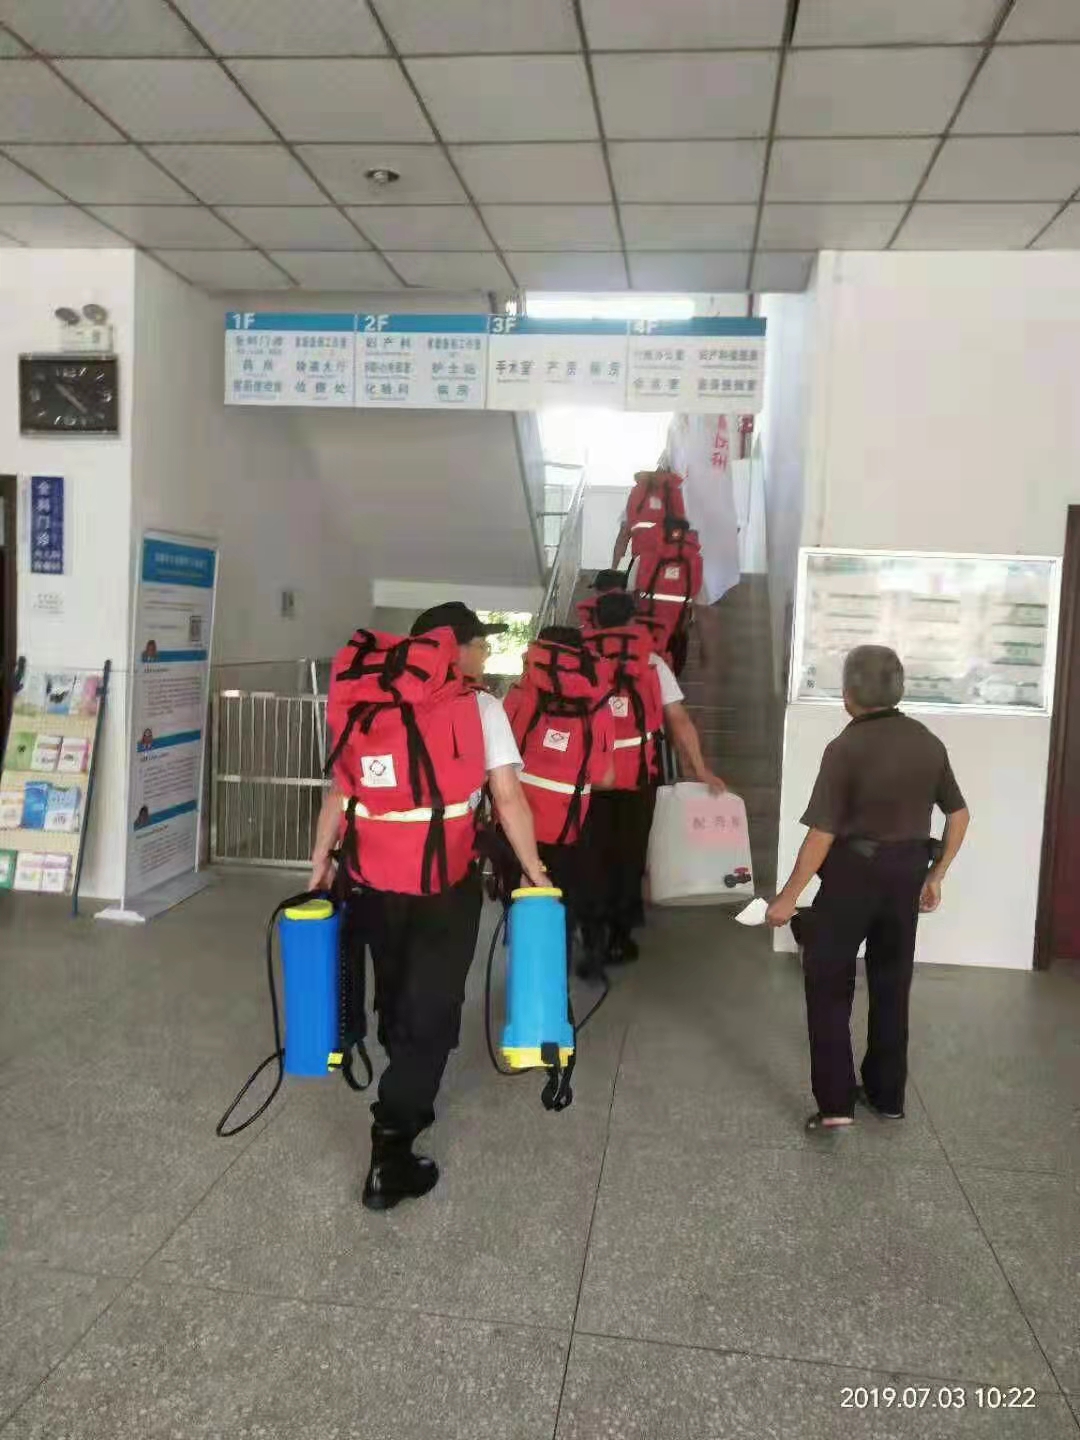 个人携行装备 中国卫生应急队伍双肩背囊背包登山包